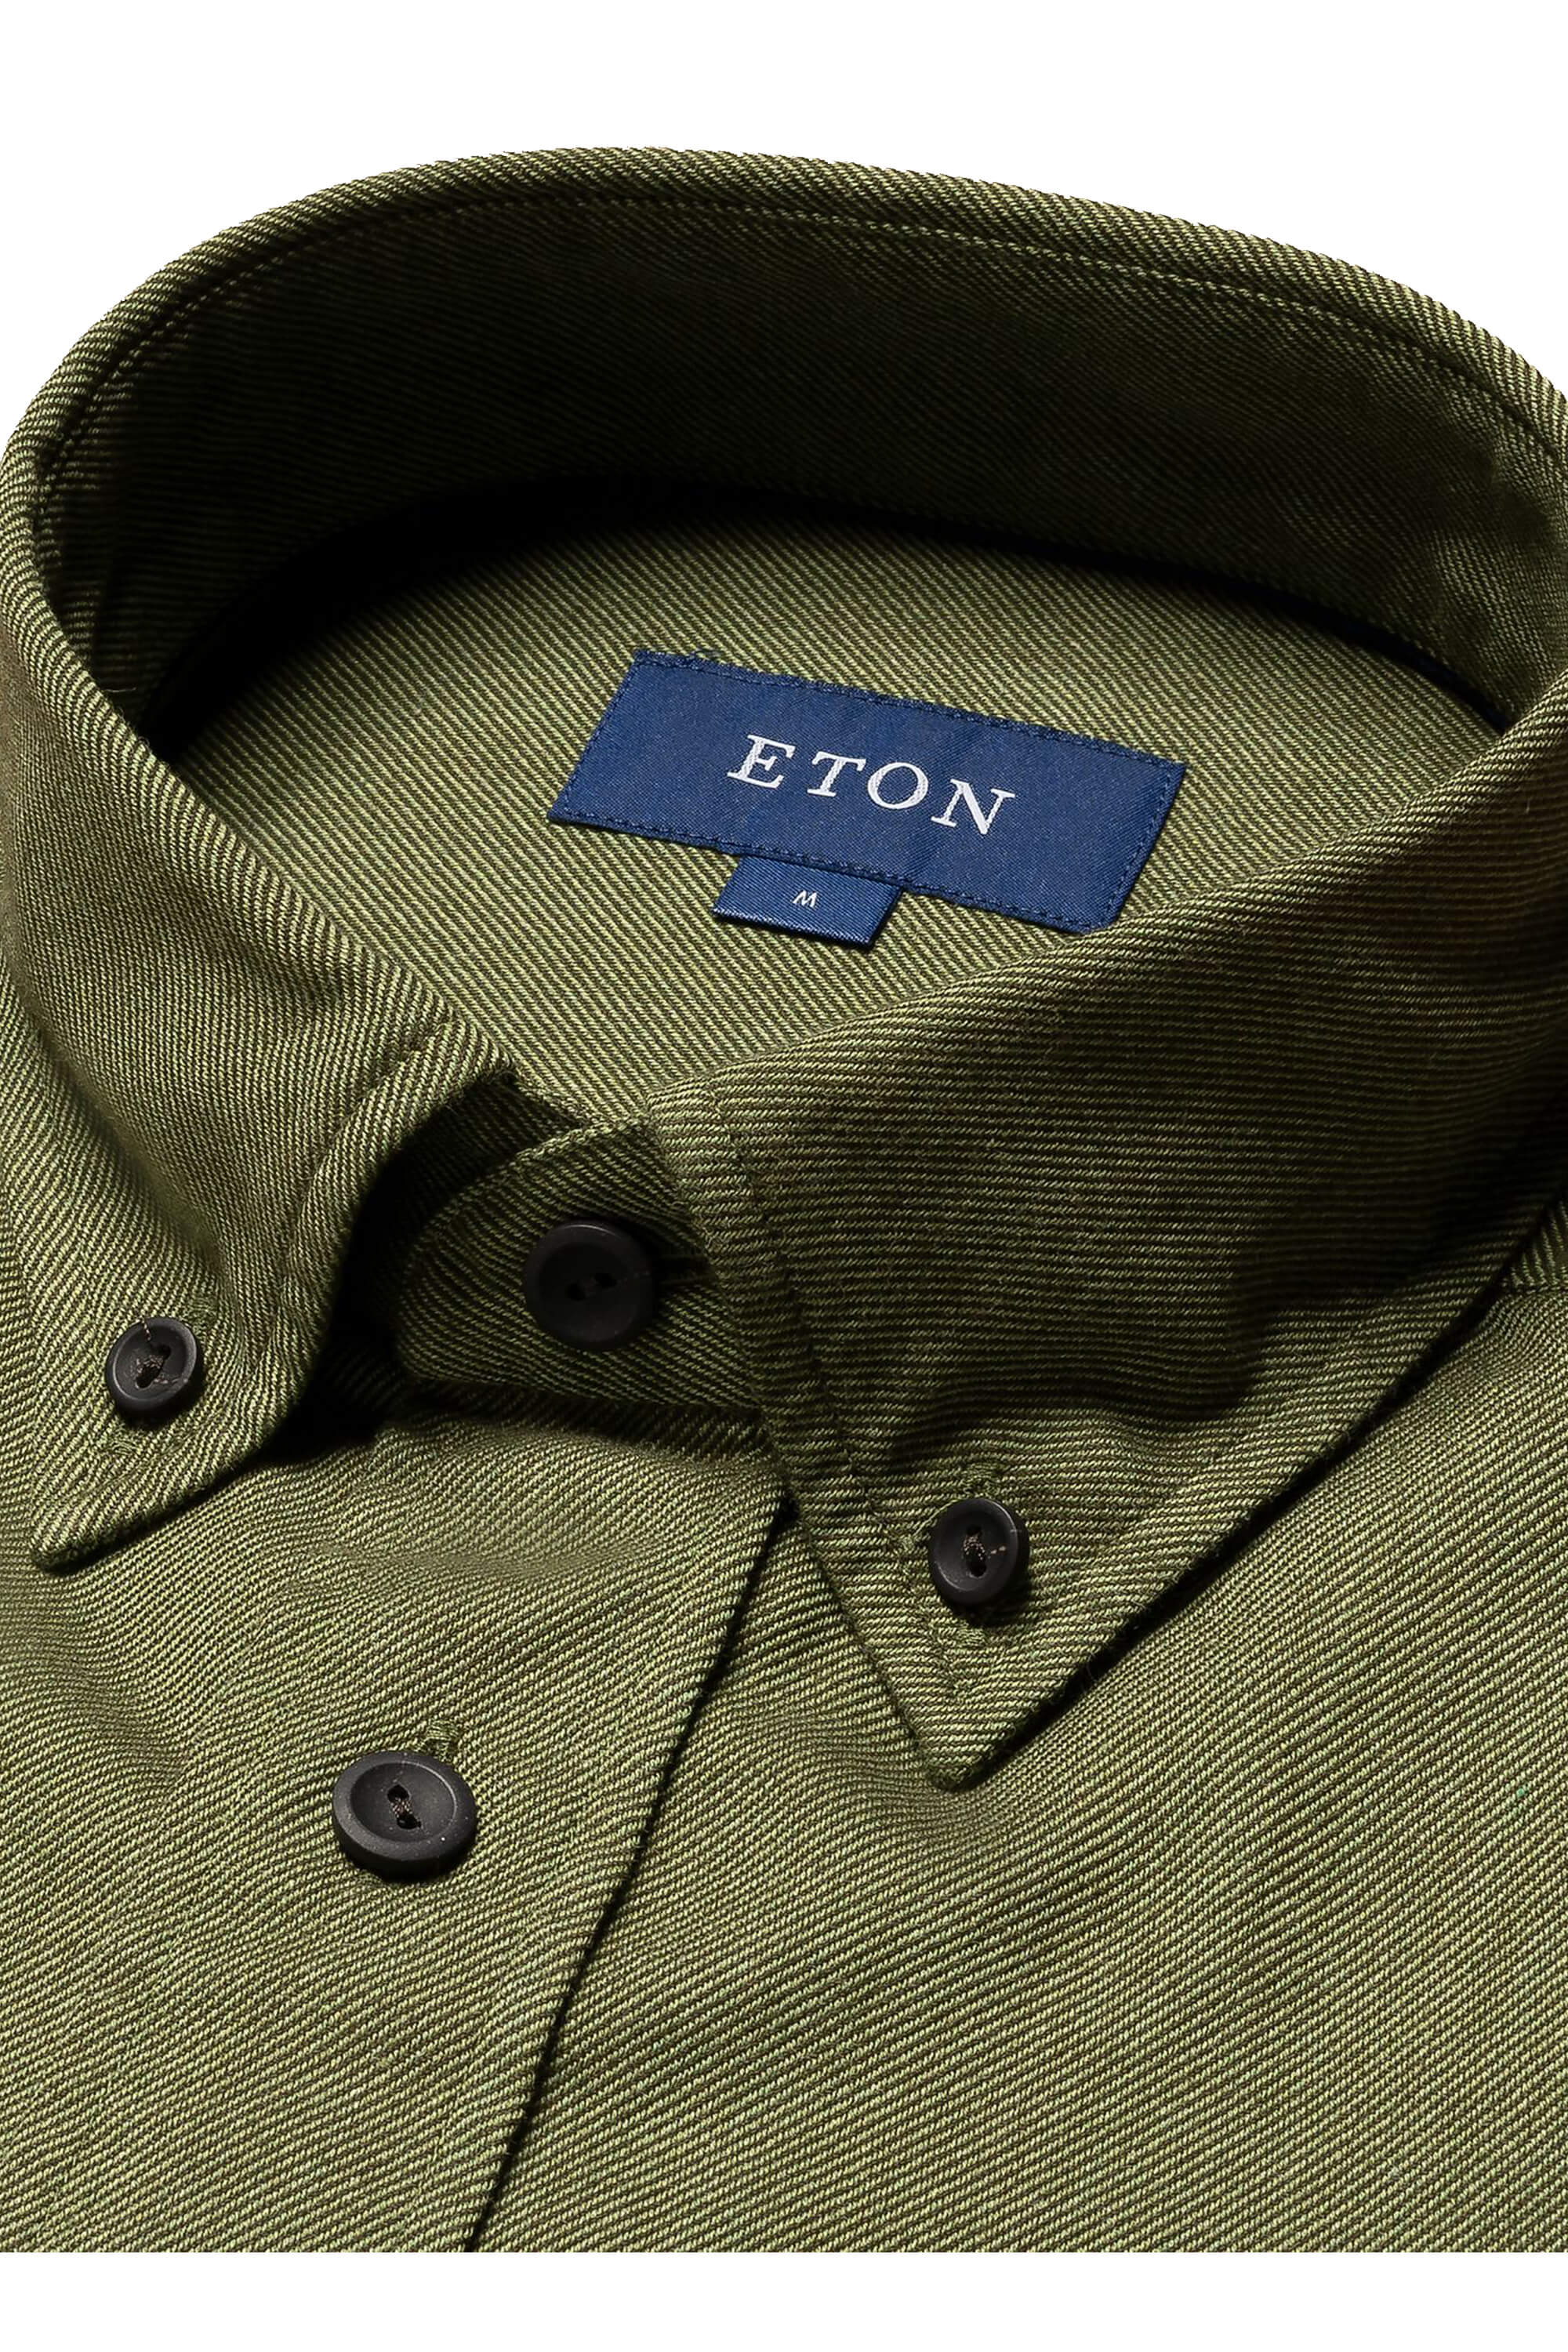 Eton Dark Green Twill Flannel Shirt